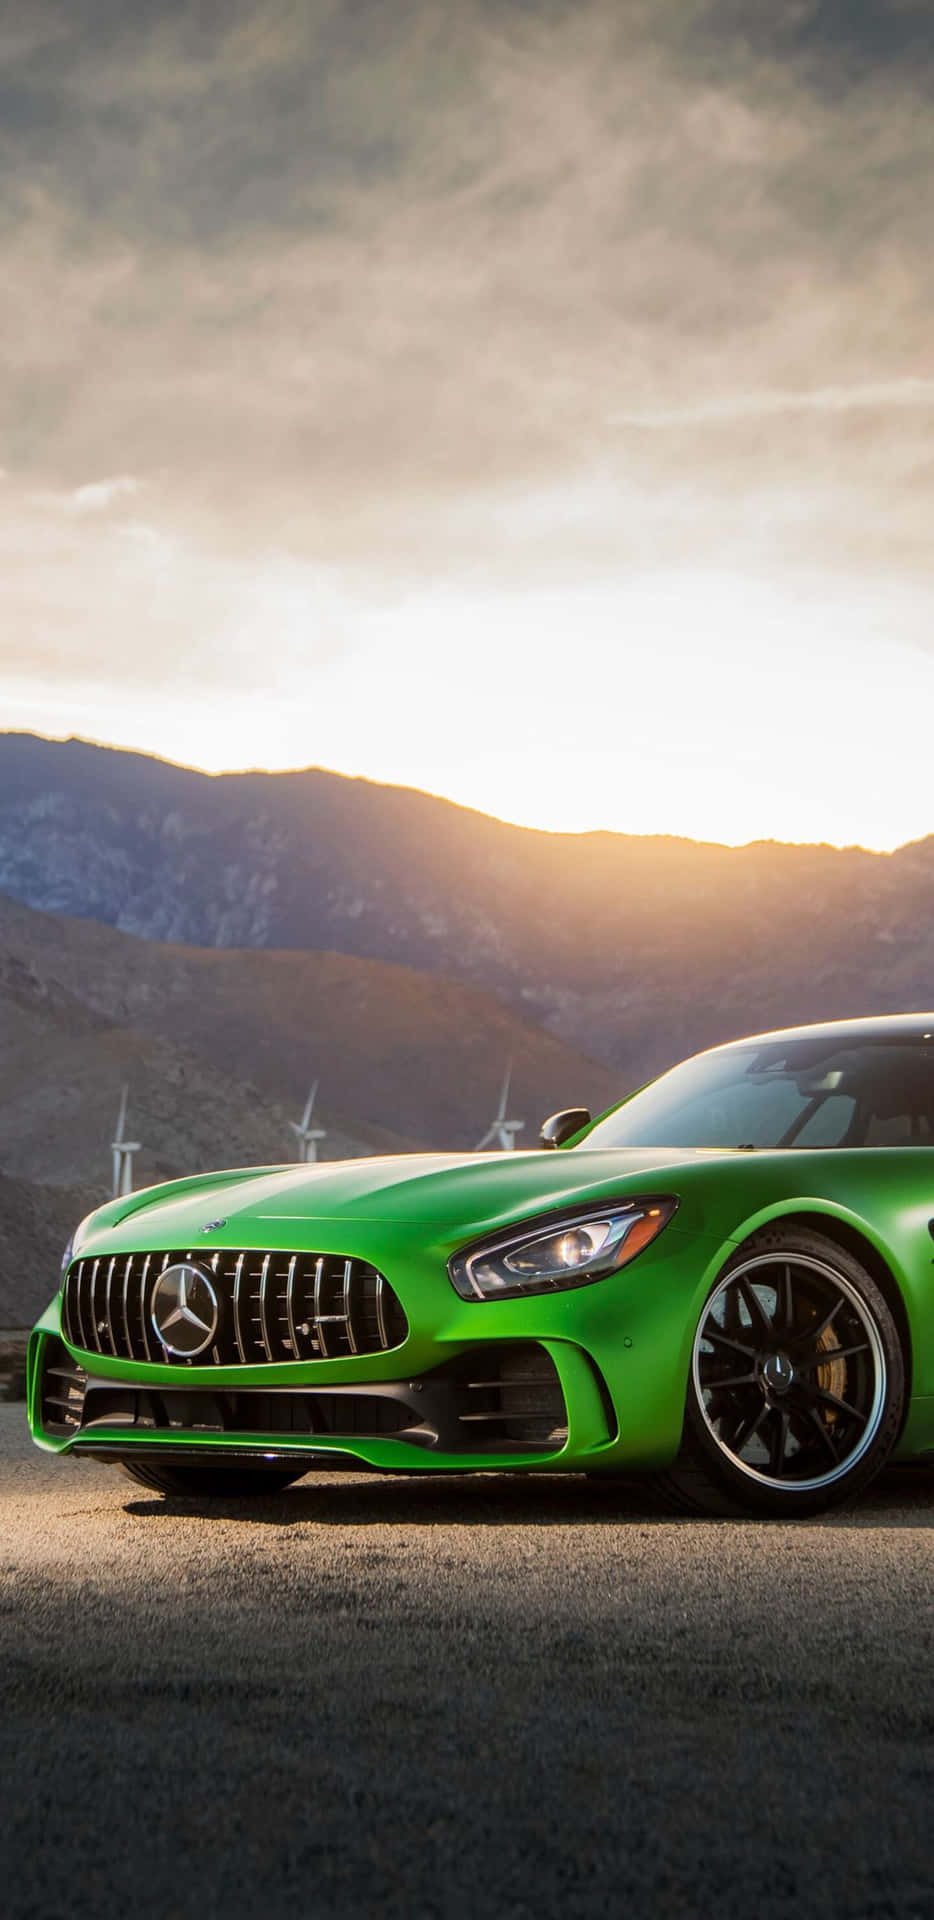 Fondode Pantalla De Un Mercedes Verde Con Salida De Sol En Un Pixel 3xl Amg Gt-r.